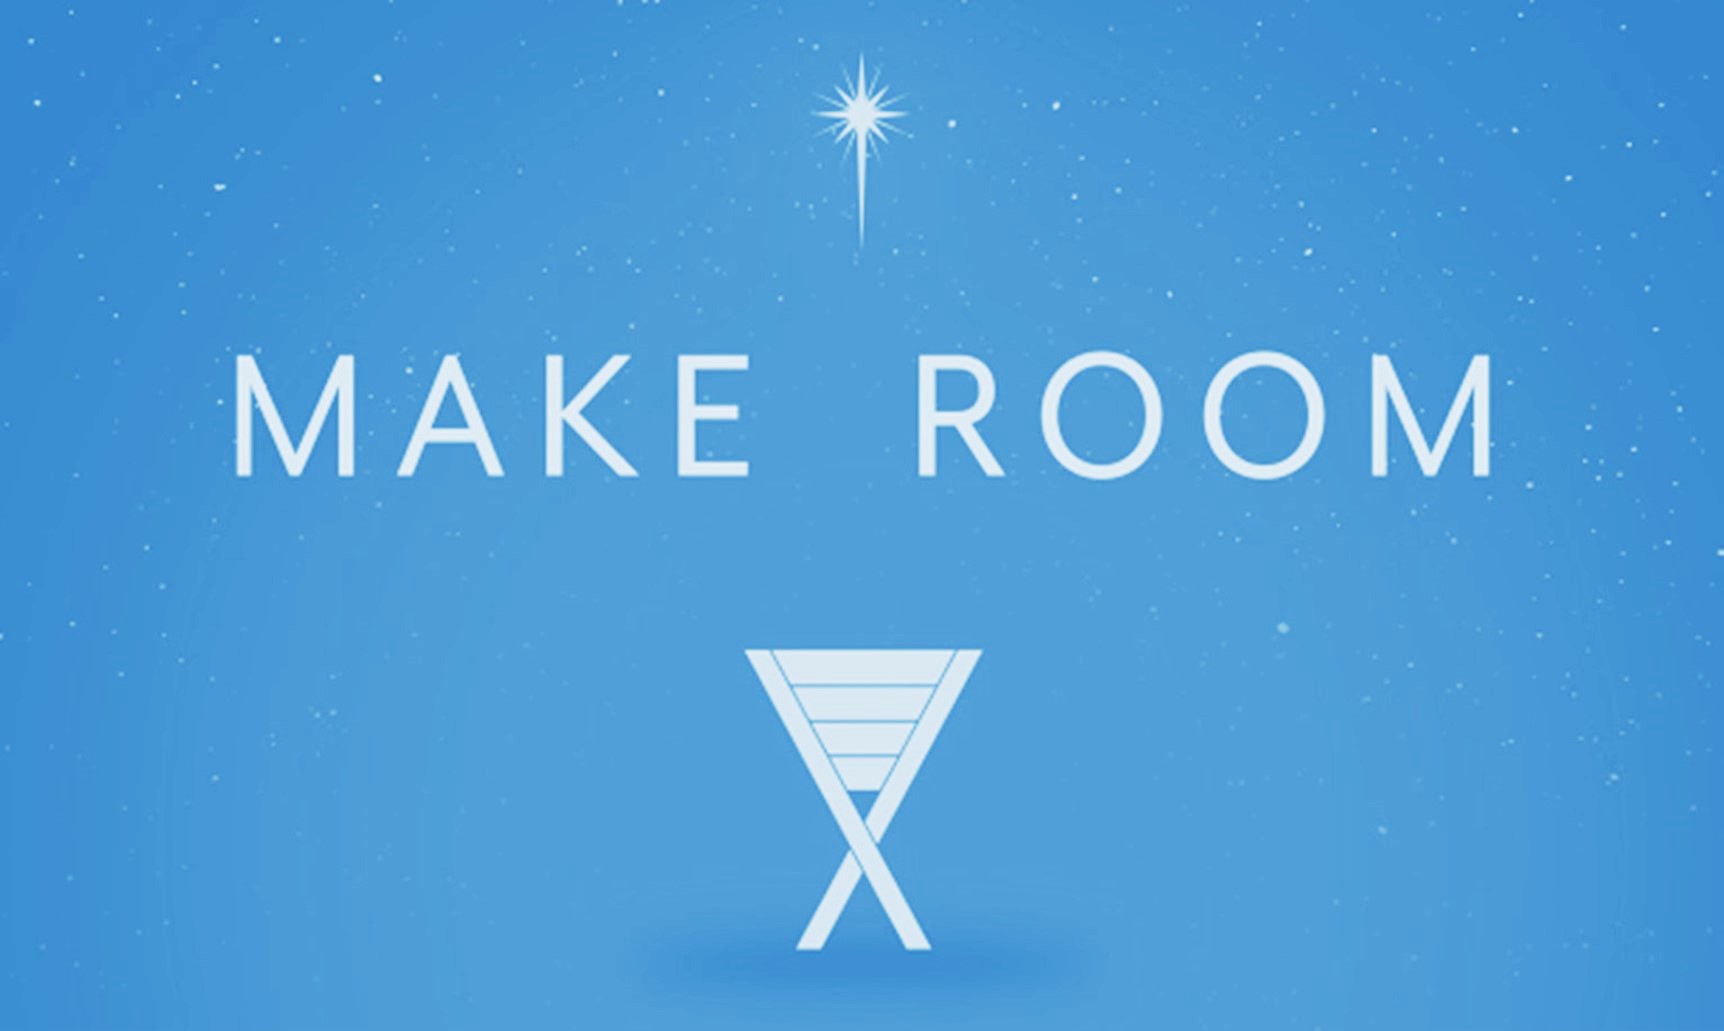 Make Room #2: For Hope